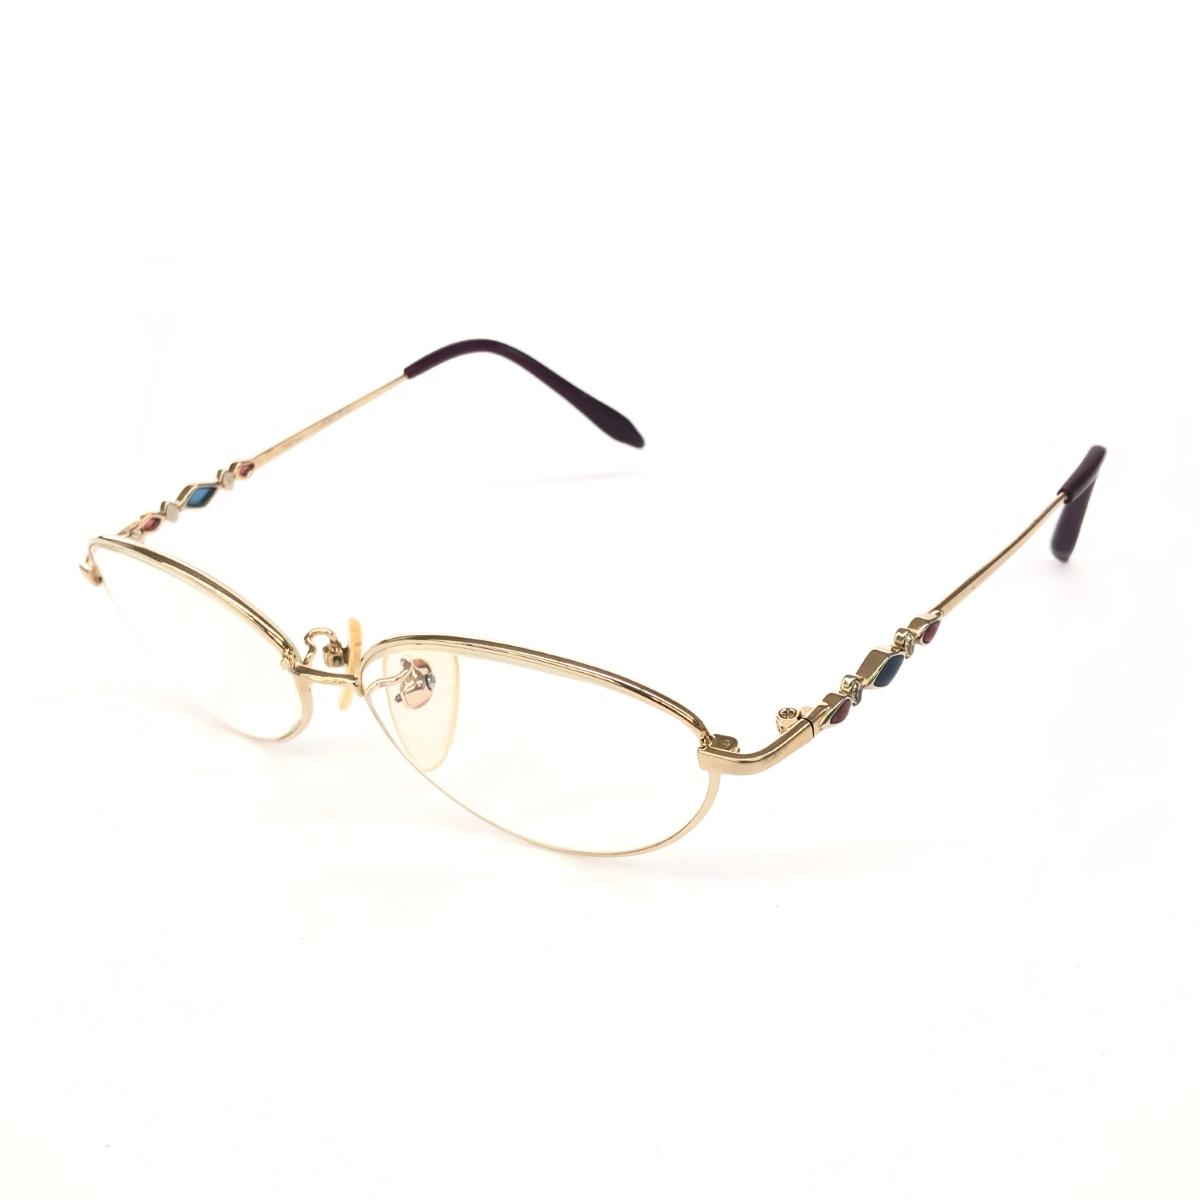 Varier ヴァリエール メガネフレーム VAR021 ゴールドカラー/パープル レディース メガネ 眼鏡 サングラス sunglasses 服飾小物 